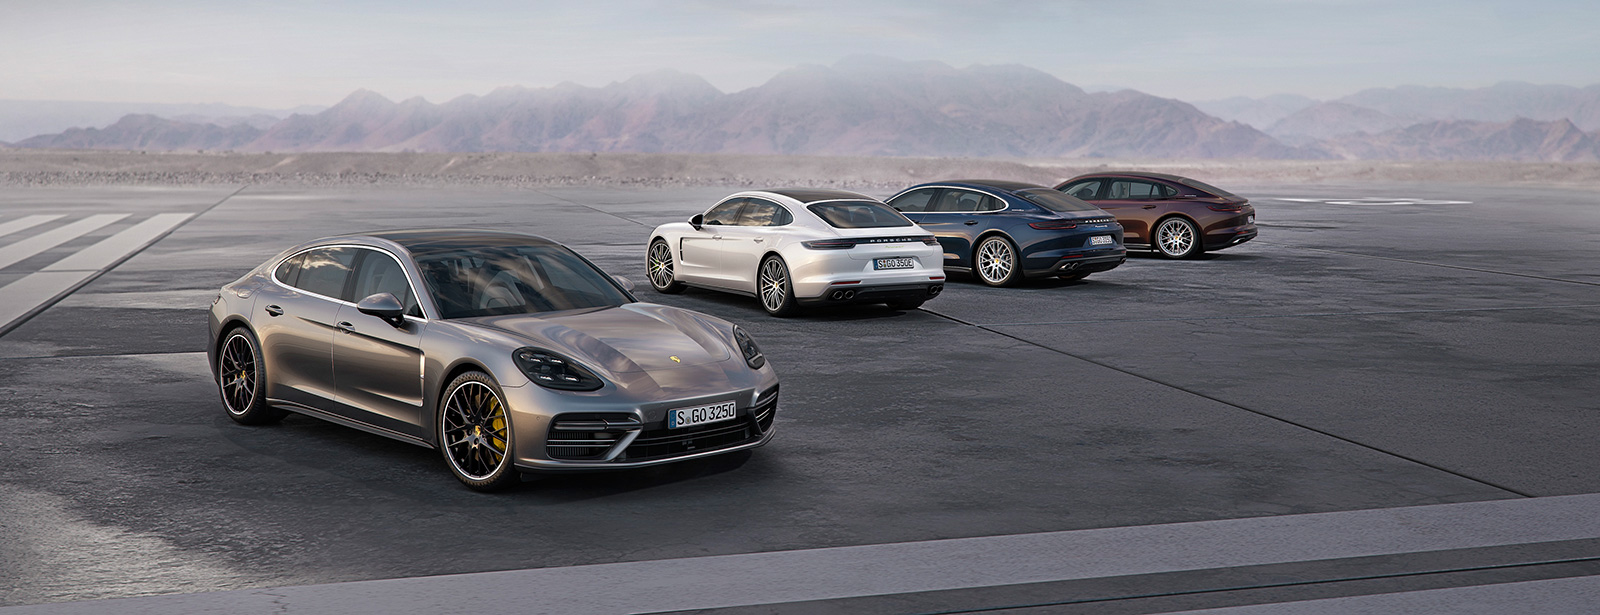 Der neue Porsche Panamera – Komfort, Performance, Luxus und Effzienz in  ihrer schönsten Form – LokaleBlicke